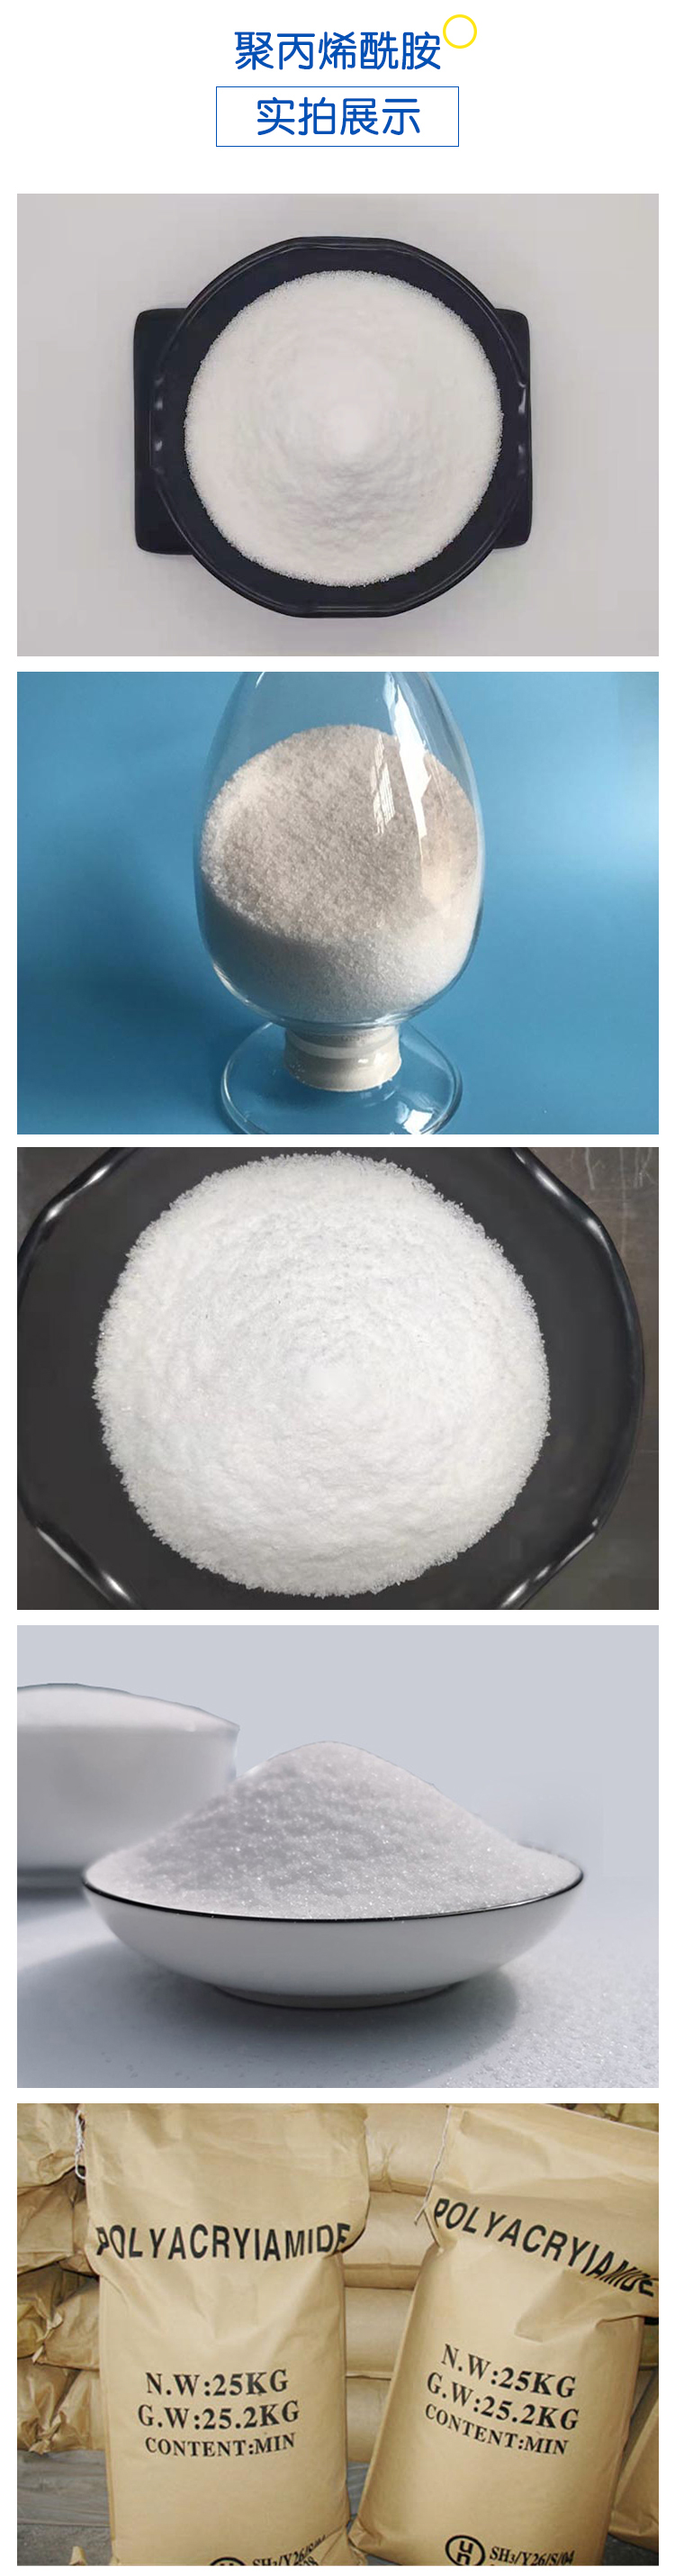 洗砂用聚丙烯酰胺